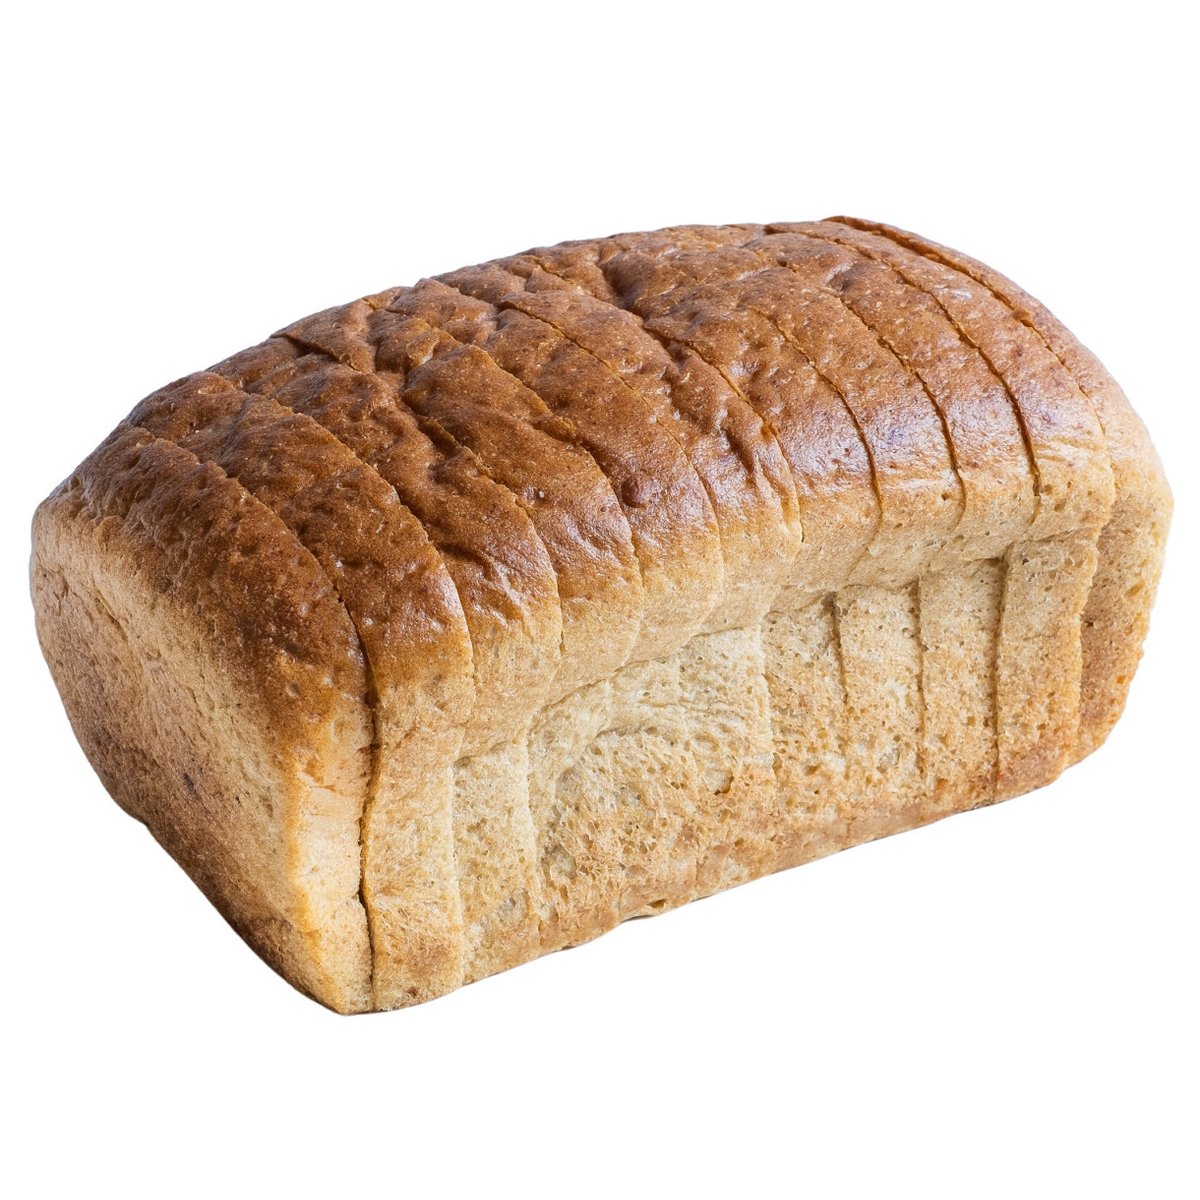 Matějovo pekařství Proteinový toustový chléb celý, krájený